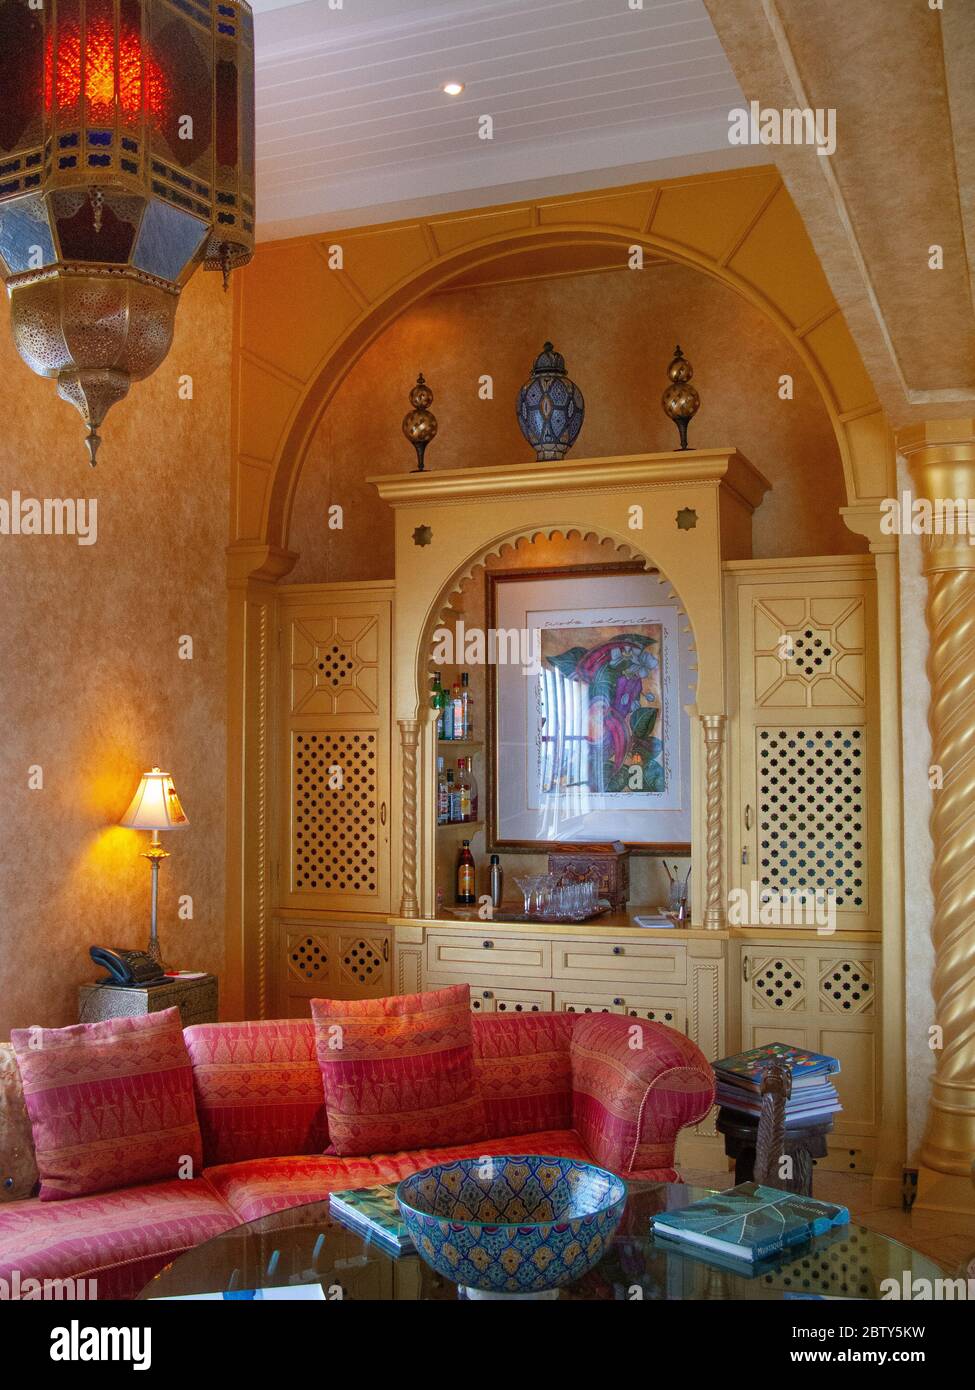 Toucan Hill Villa, eine villa im marokkanischen Stil, die höchste Villa auf Mustique Island. Ein exklusives Paradies, Kurzurlaub und Karibik Ziel Stockfoto